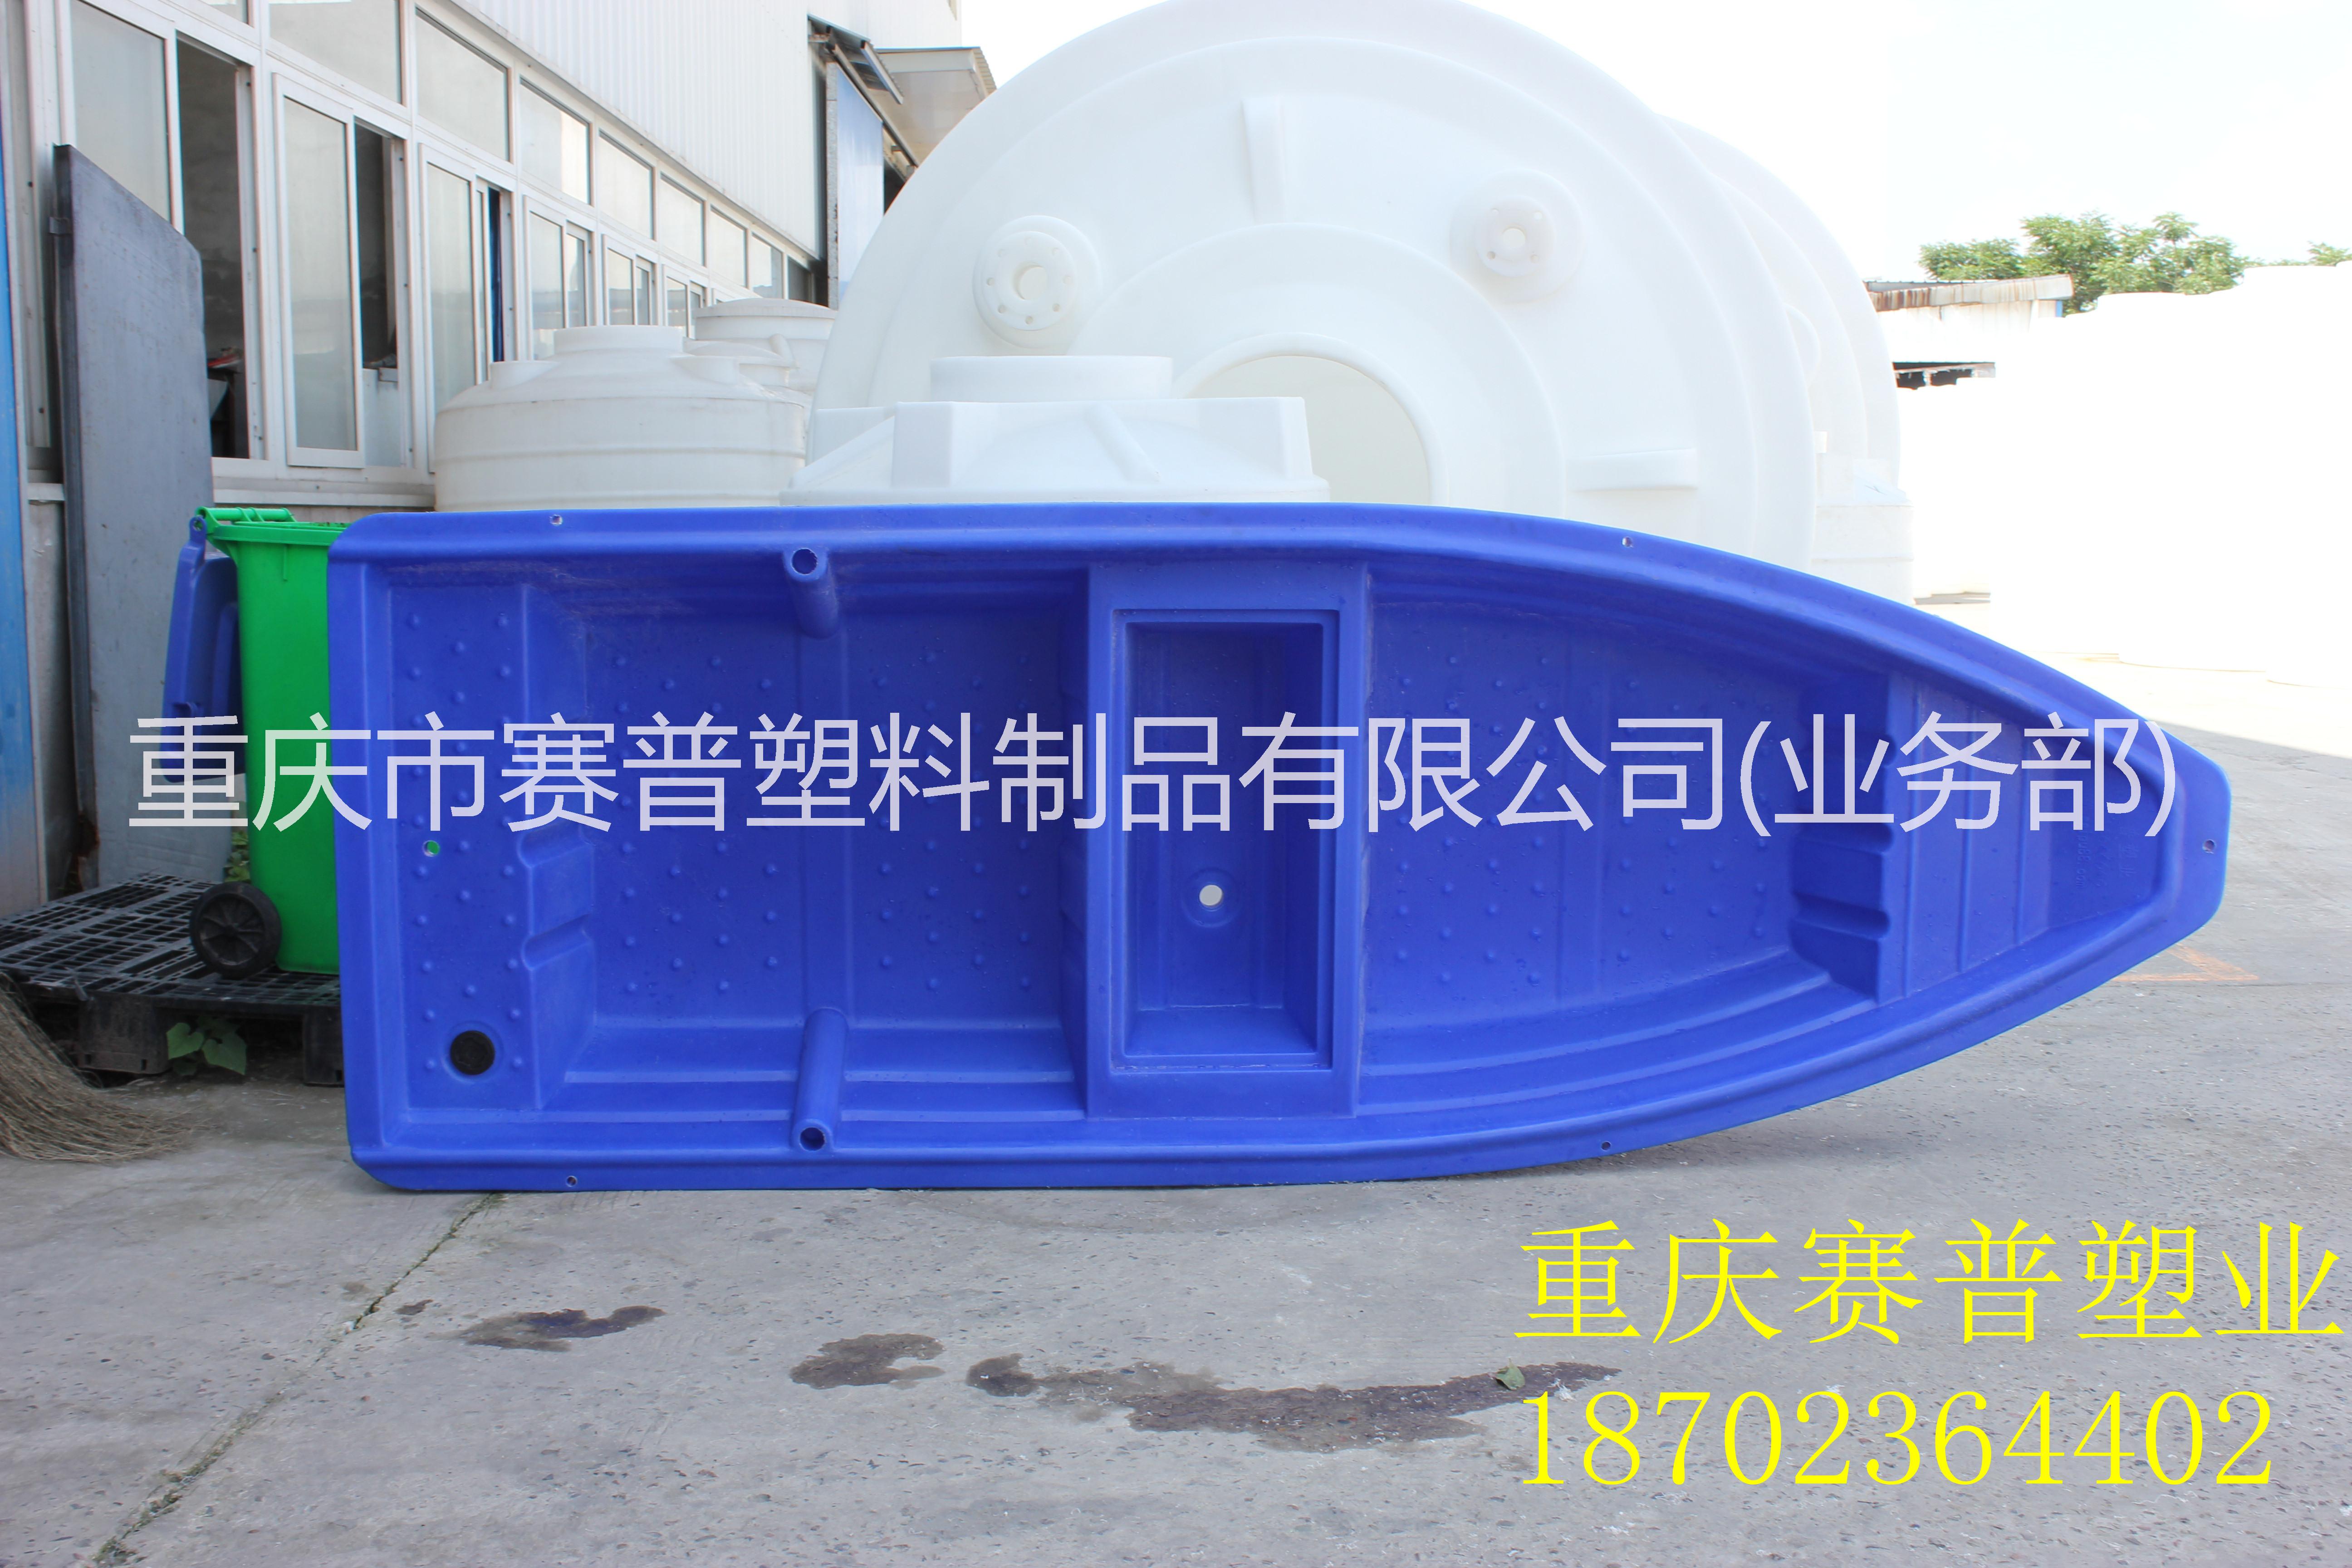 重庆市3.5米冲锋舟厂家水上运输3.5米4m塑料渔船 垂钓 养殖塑胶船 渔船运输 3.5米冲锋舟